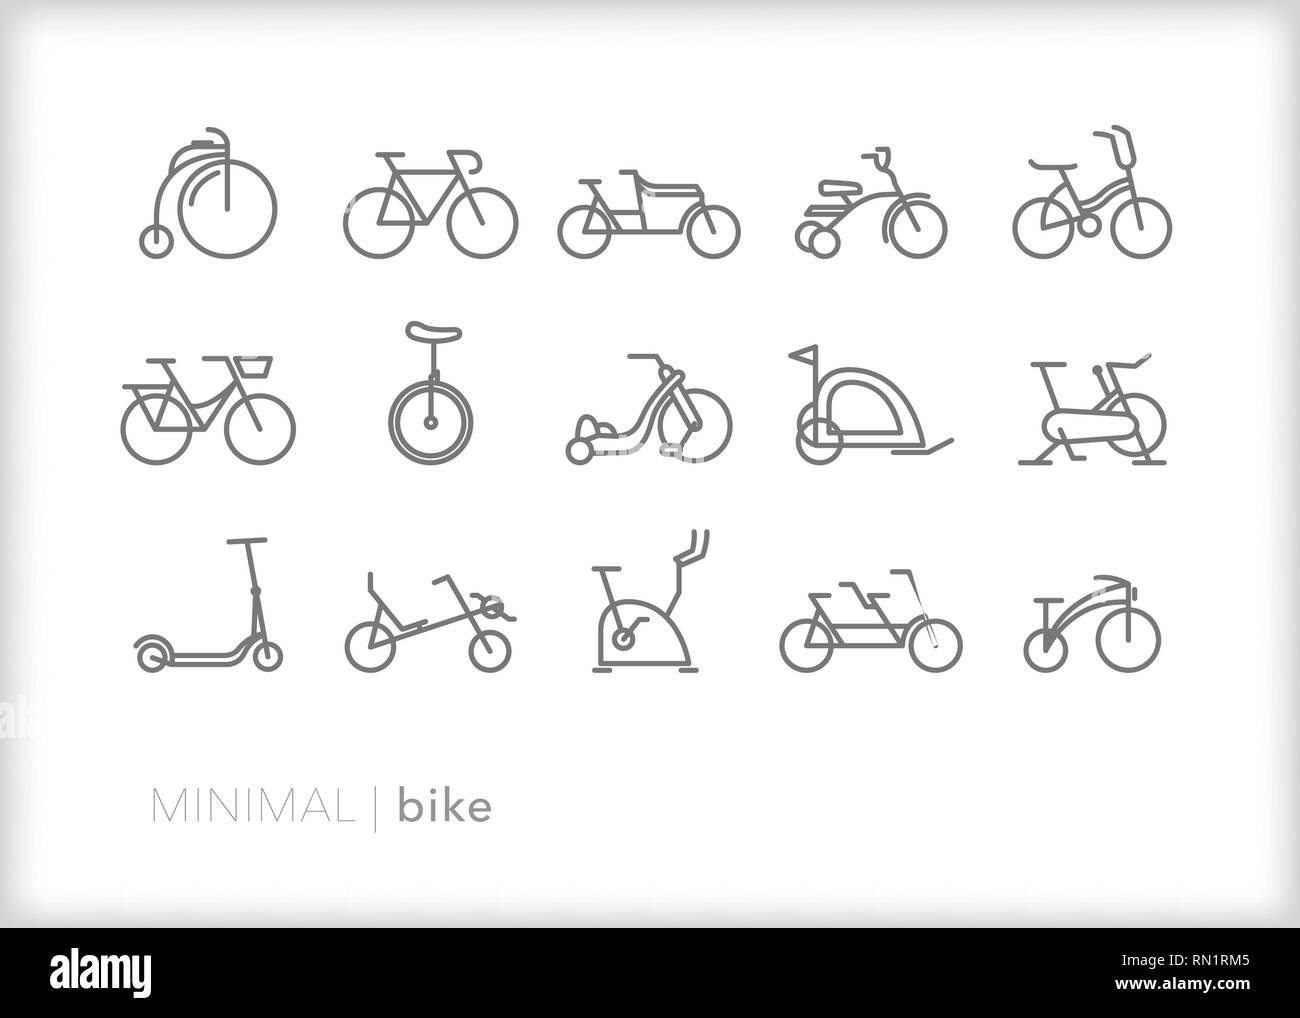 Satz von 15 bike line Icons, die über verschiedene Arten von Fahrrädern einschließlich Altmodische, Cruiser, Übung, Tandem, Liegerad, Dreirad, und Einrad Stock Vektor